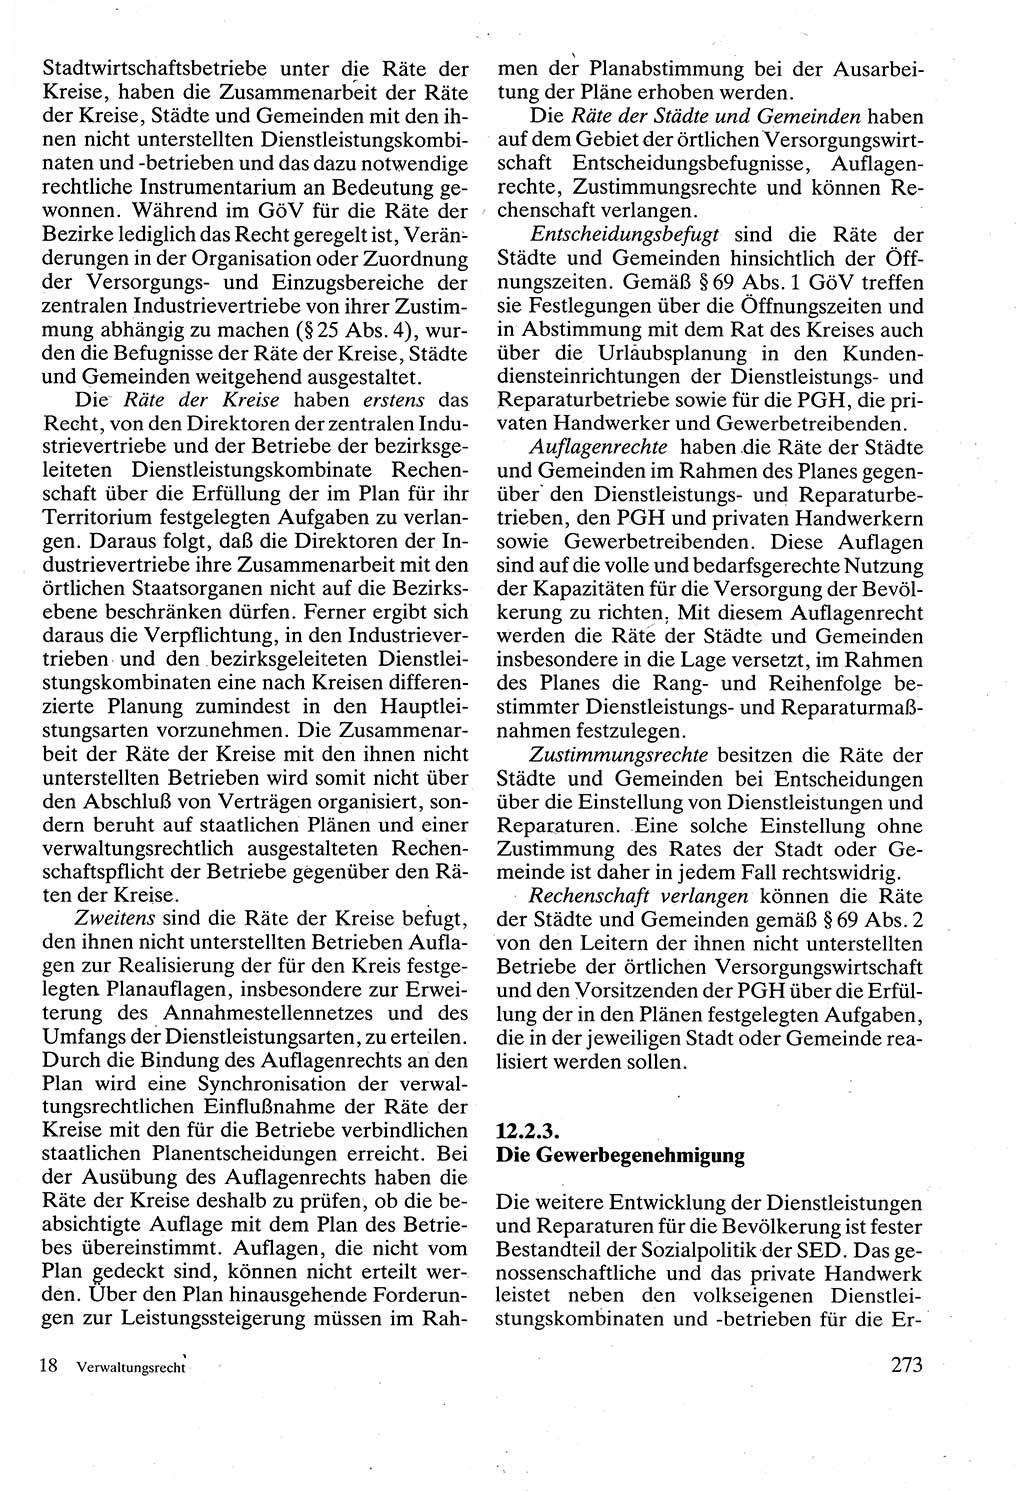 Verwaltungsrecht [Deutsche Demokratische Republik (DDR)], Lehrbuch 1988, Seite 273 (Verw.-R. DDR Lb. 1988, S. 273)